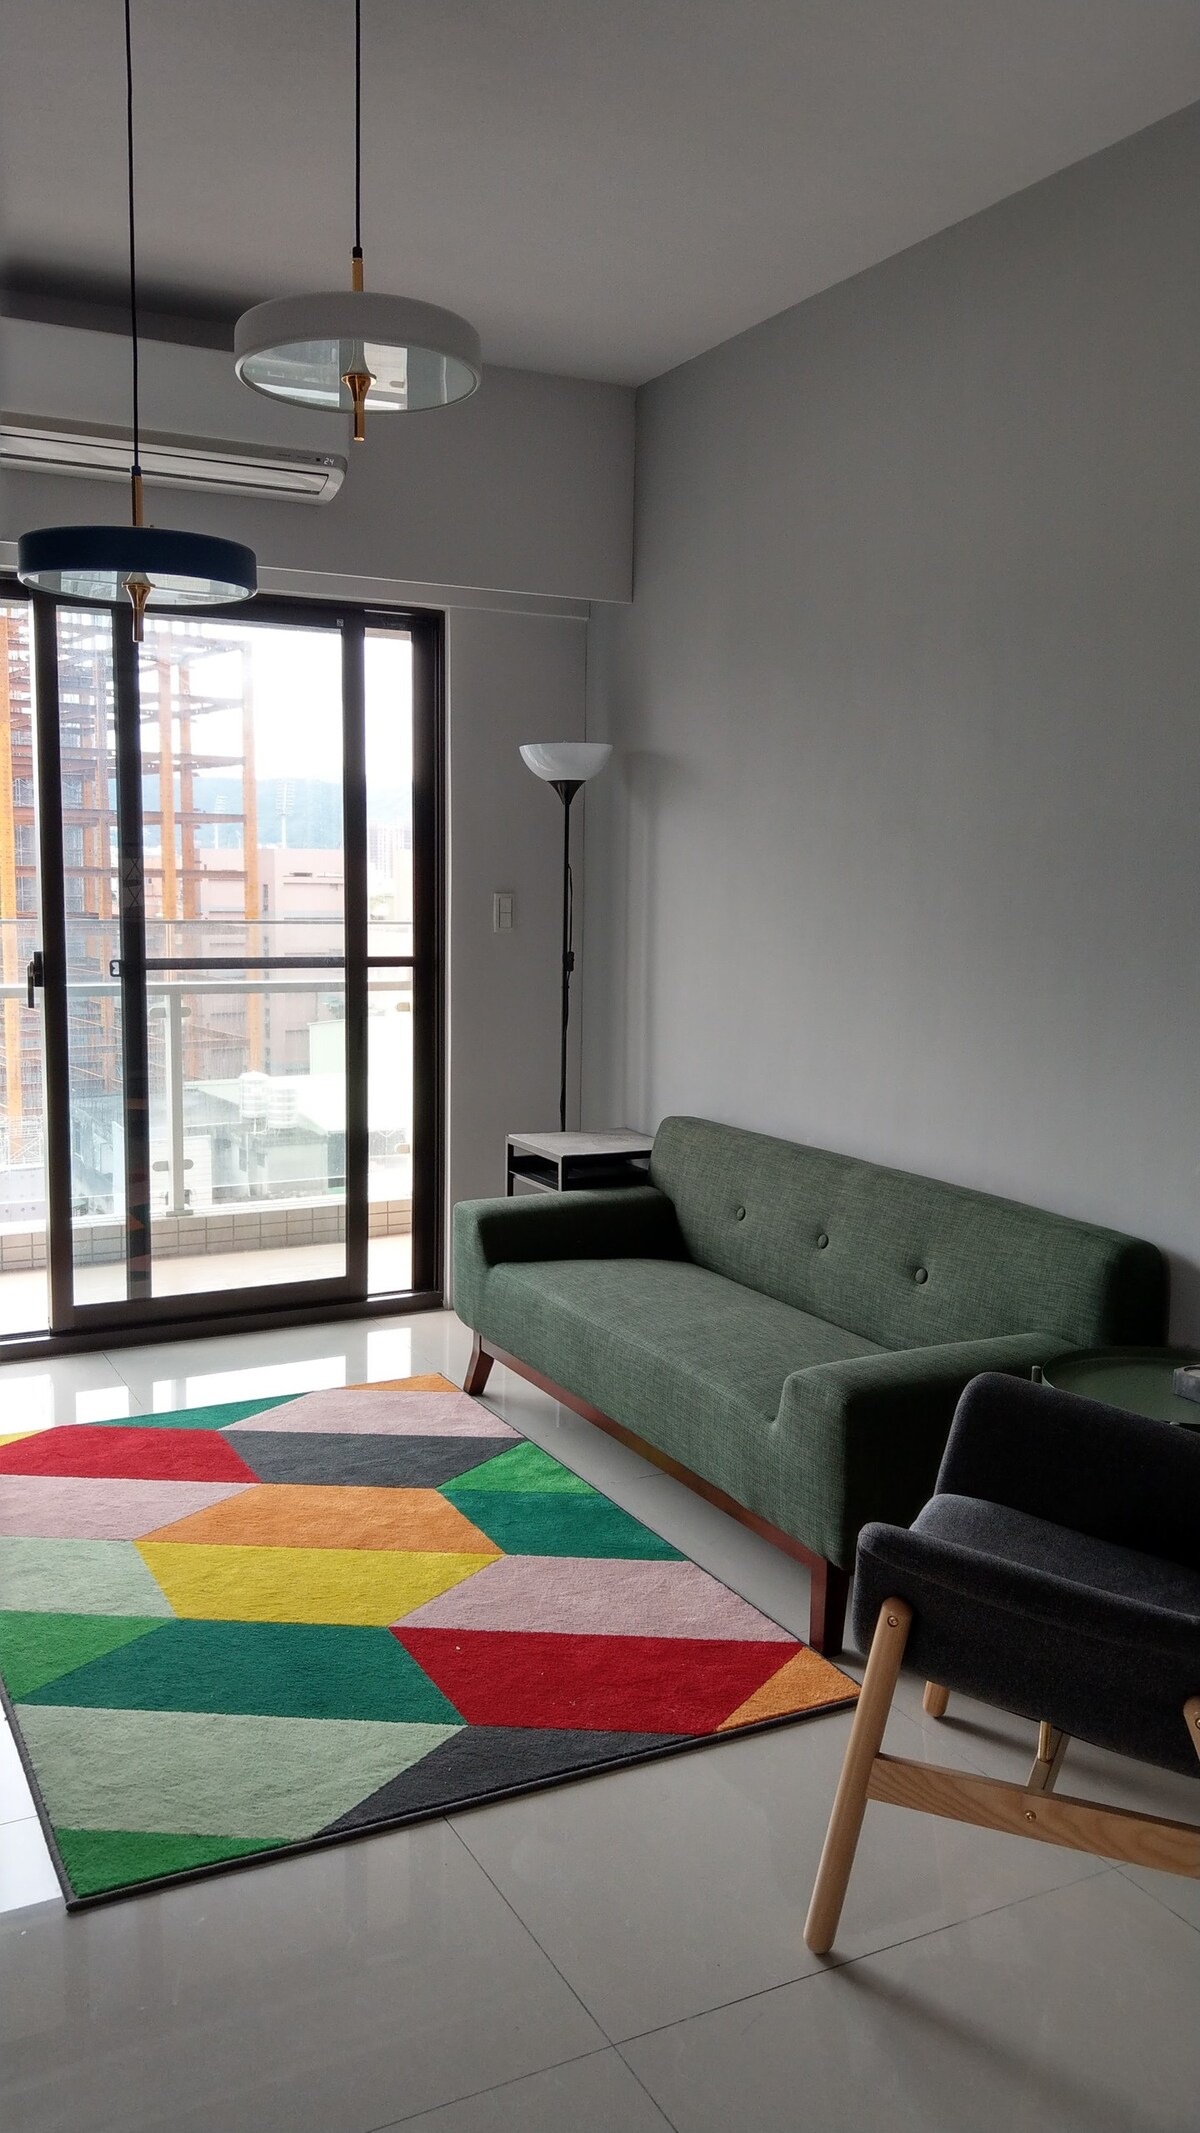 只接受長租到三月底-歡迎詢問-摩登北歐公寓 寧靜舒適的慢生活空間